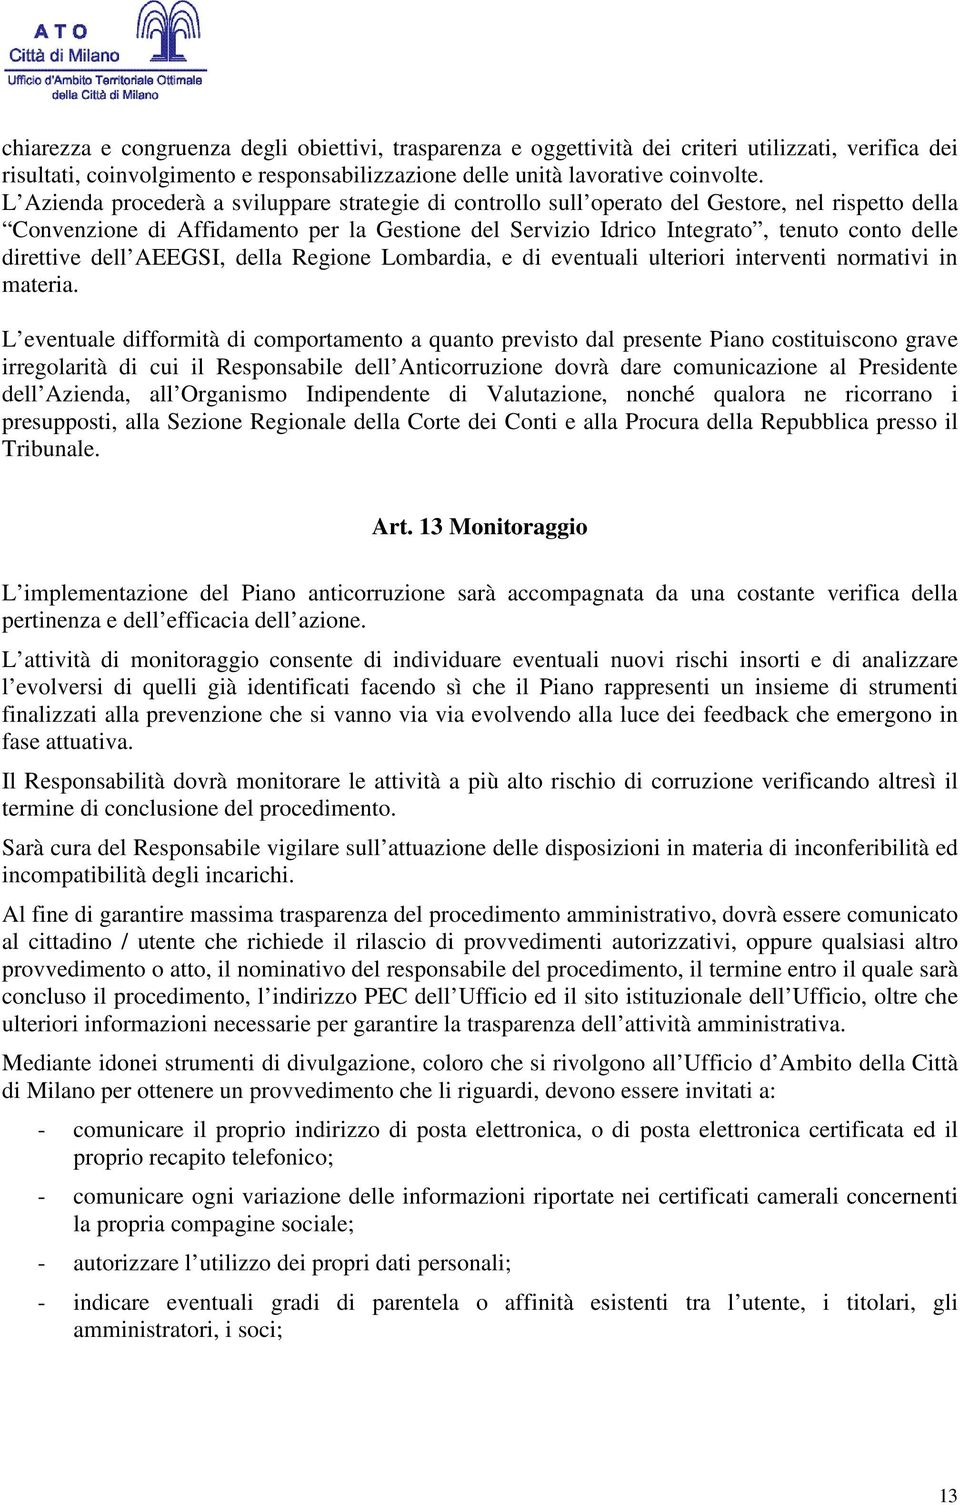 direttive dell AEEGSI, della Regione Lombardia, e di eventuali ulteriori interventi normativi in materia.